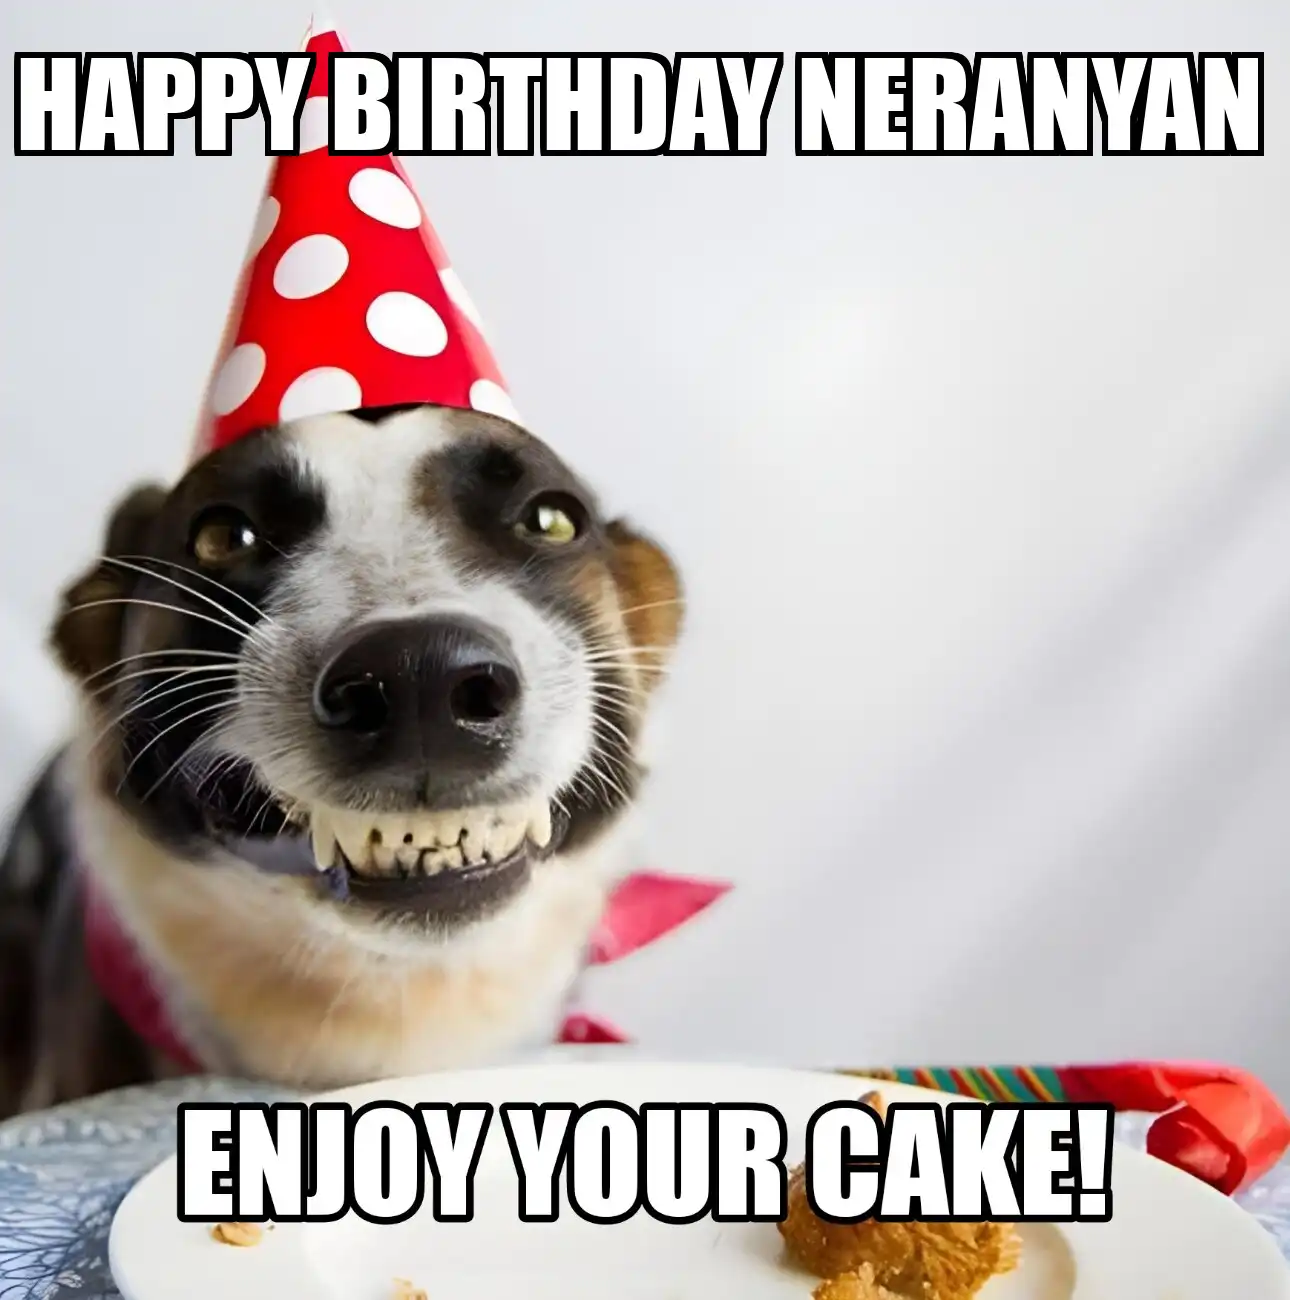 Happy Birthday Neranyan Enjoy Your Cake Dog Meme